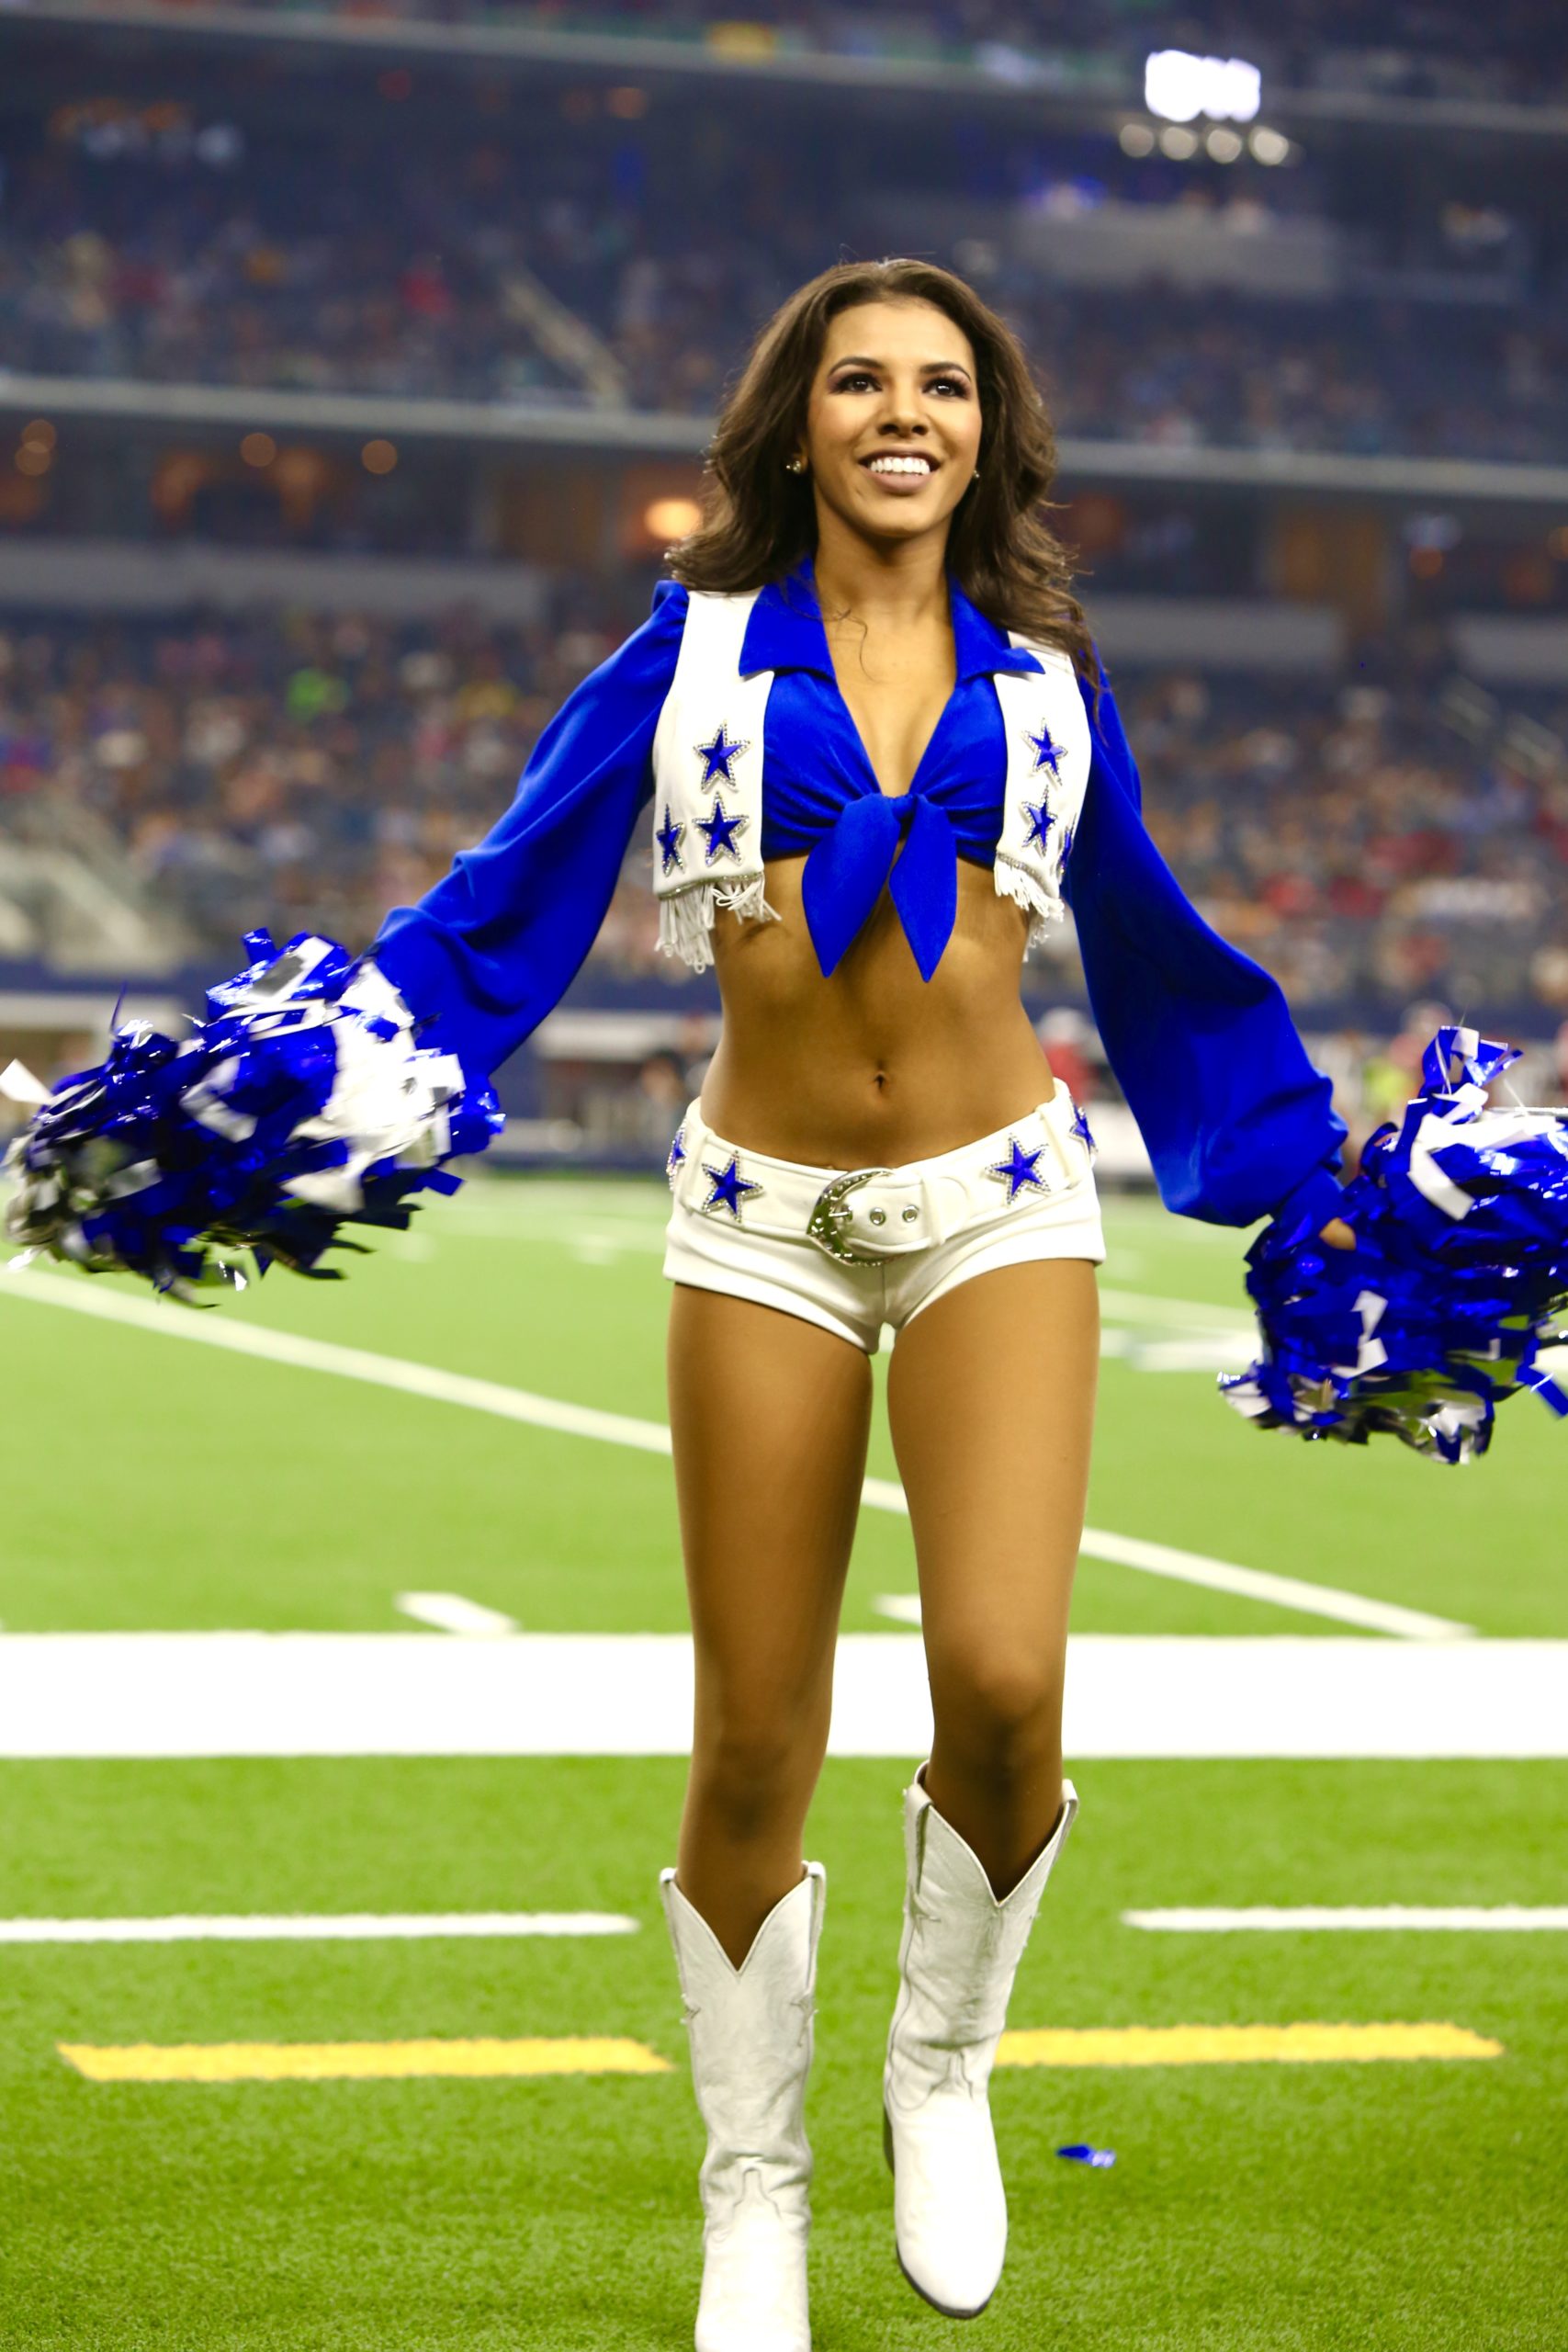 Chandi - Dallas Cowboys Cheerleaders